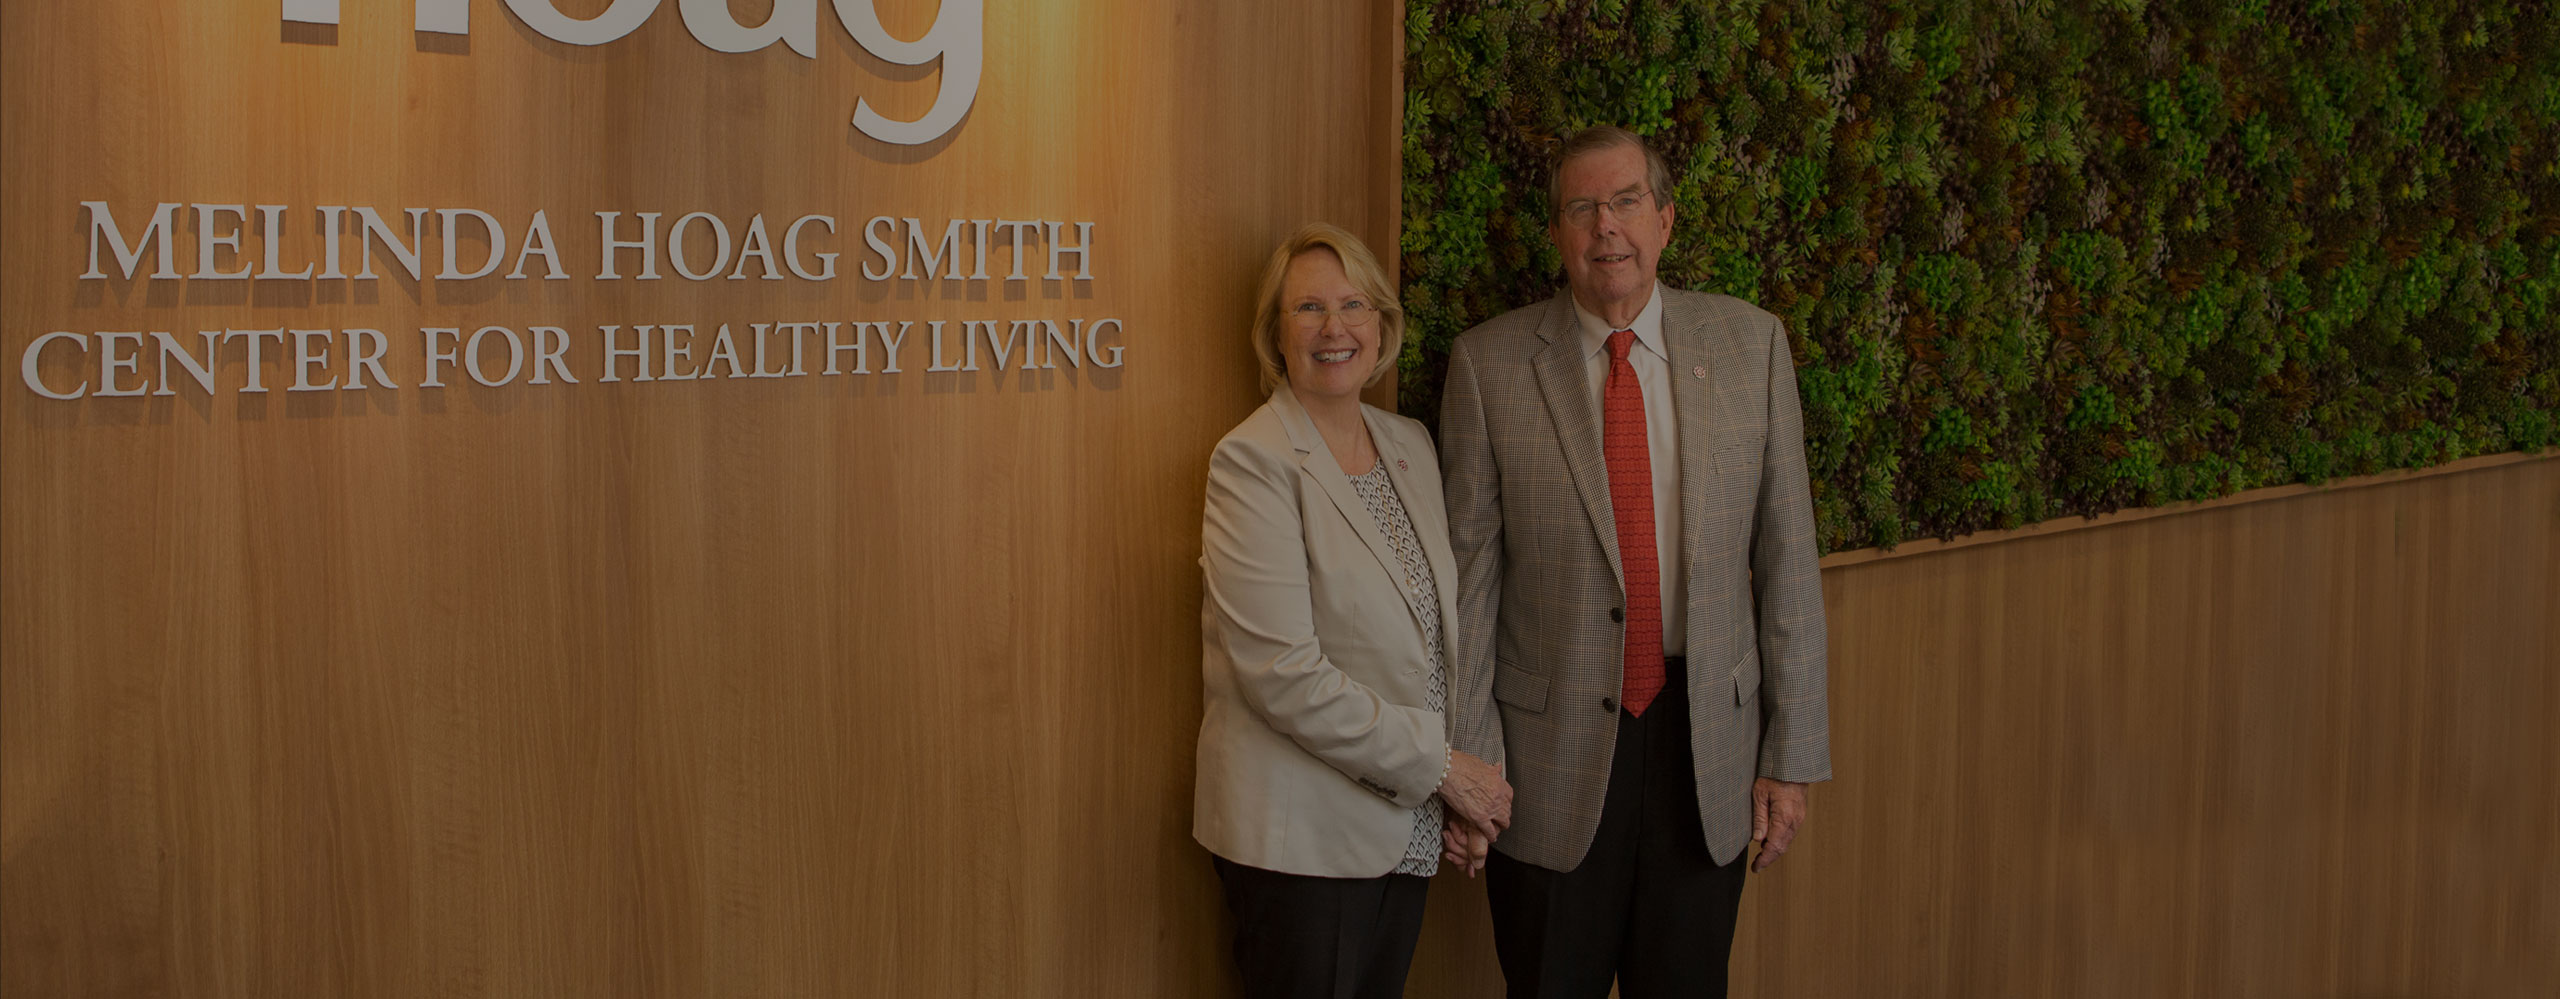 2016 Melinda Hoag Smith Center for Healthy Living